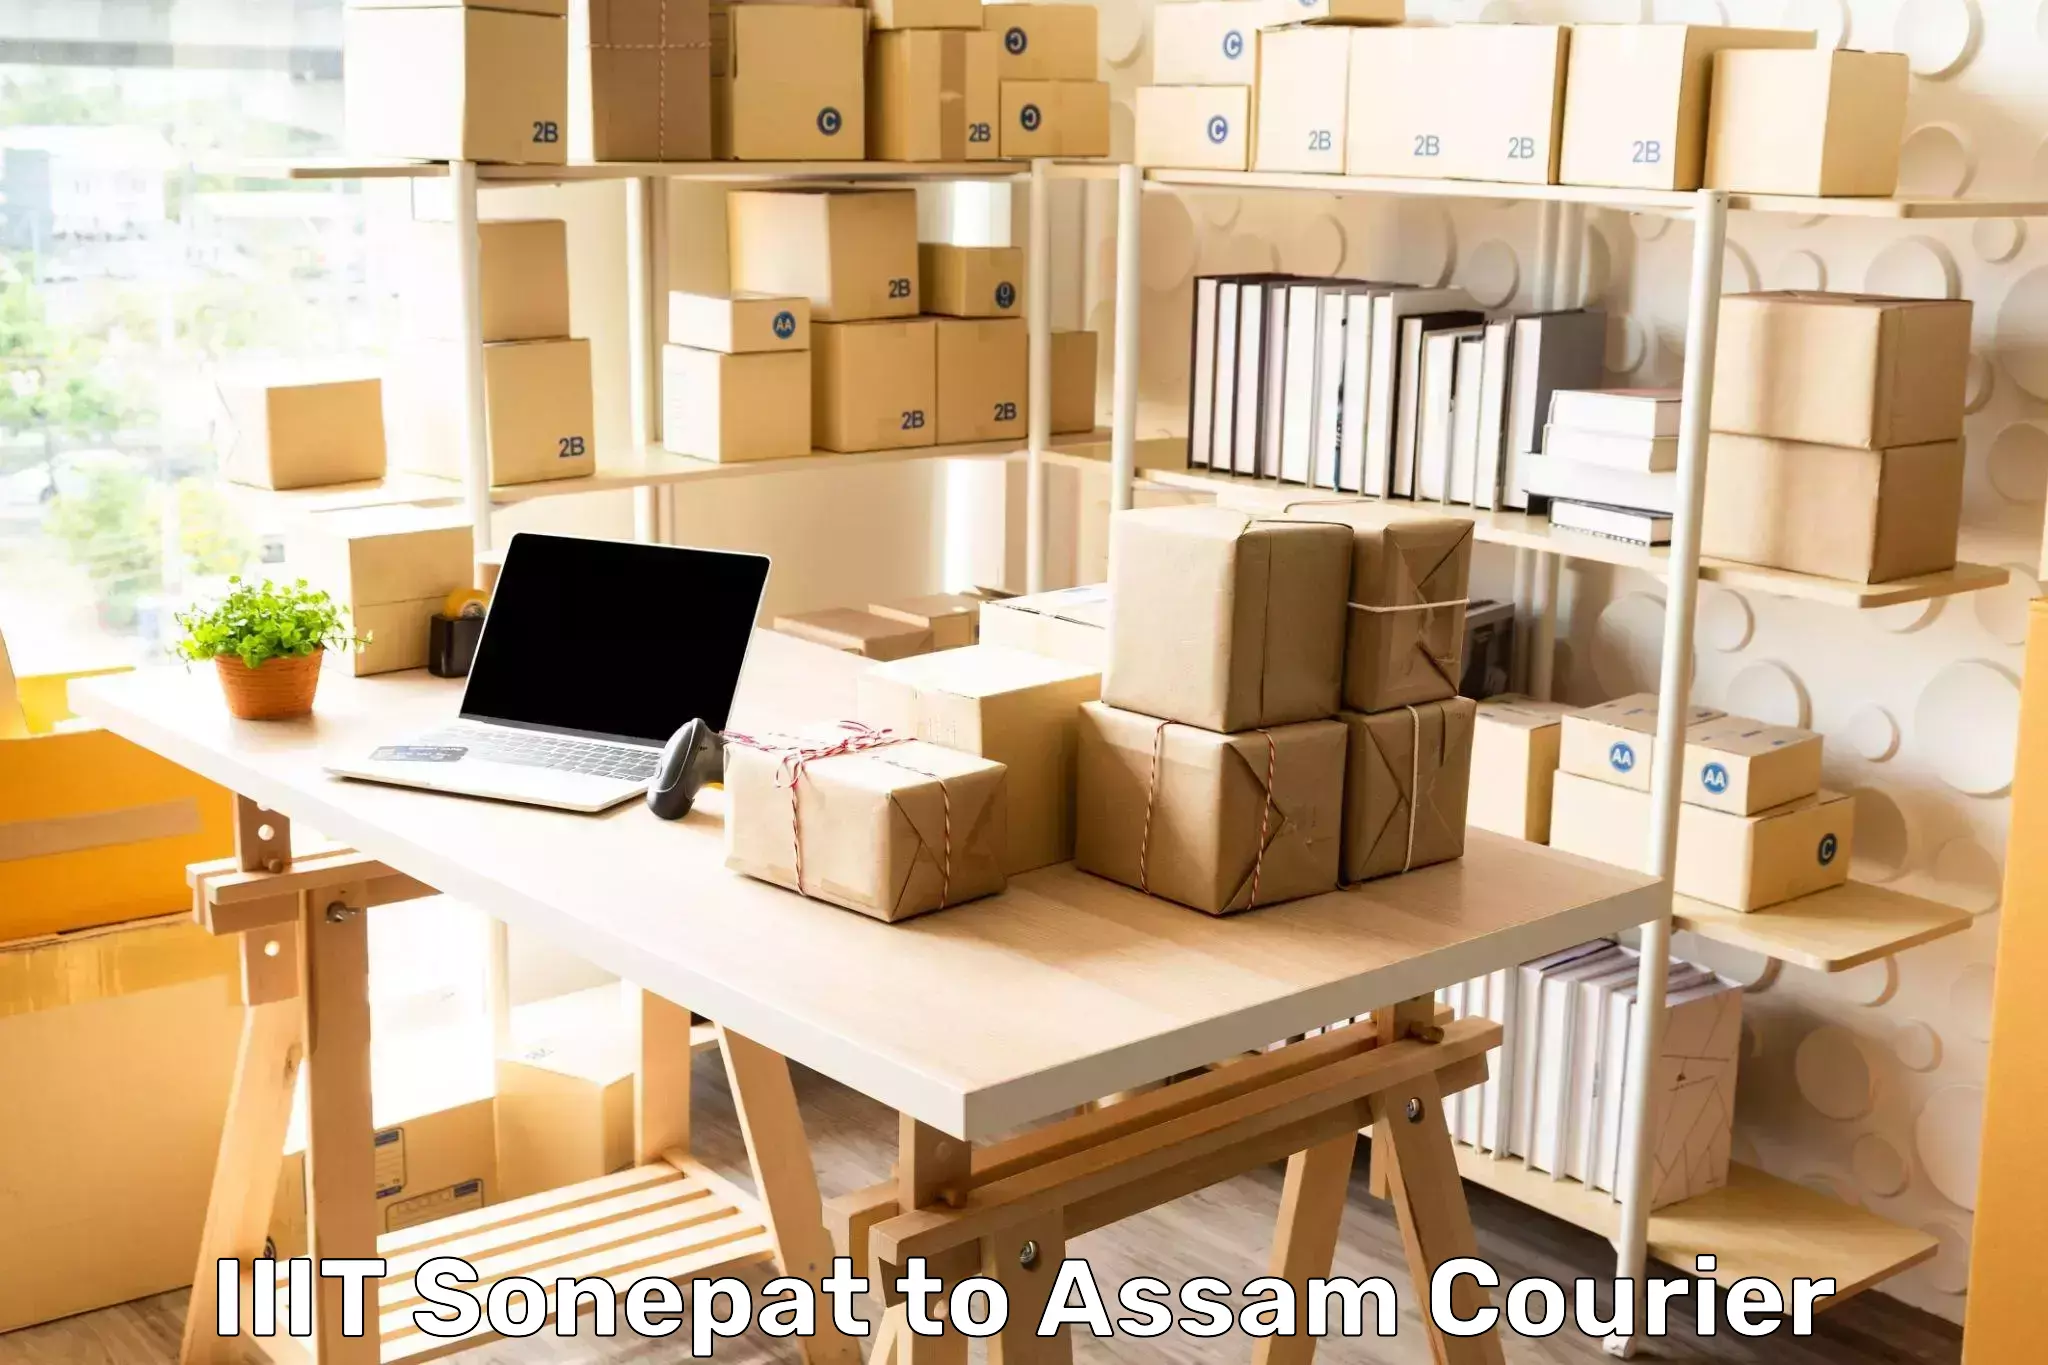 Customized delivery solutions IIIT Sonepat to Jorabat